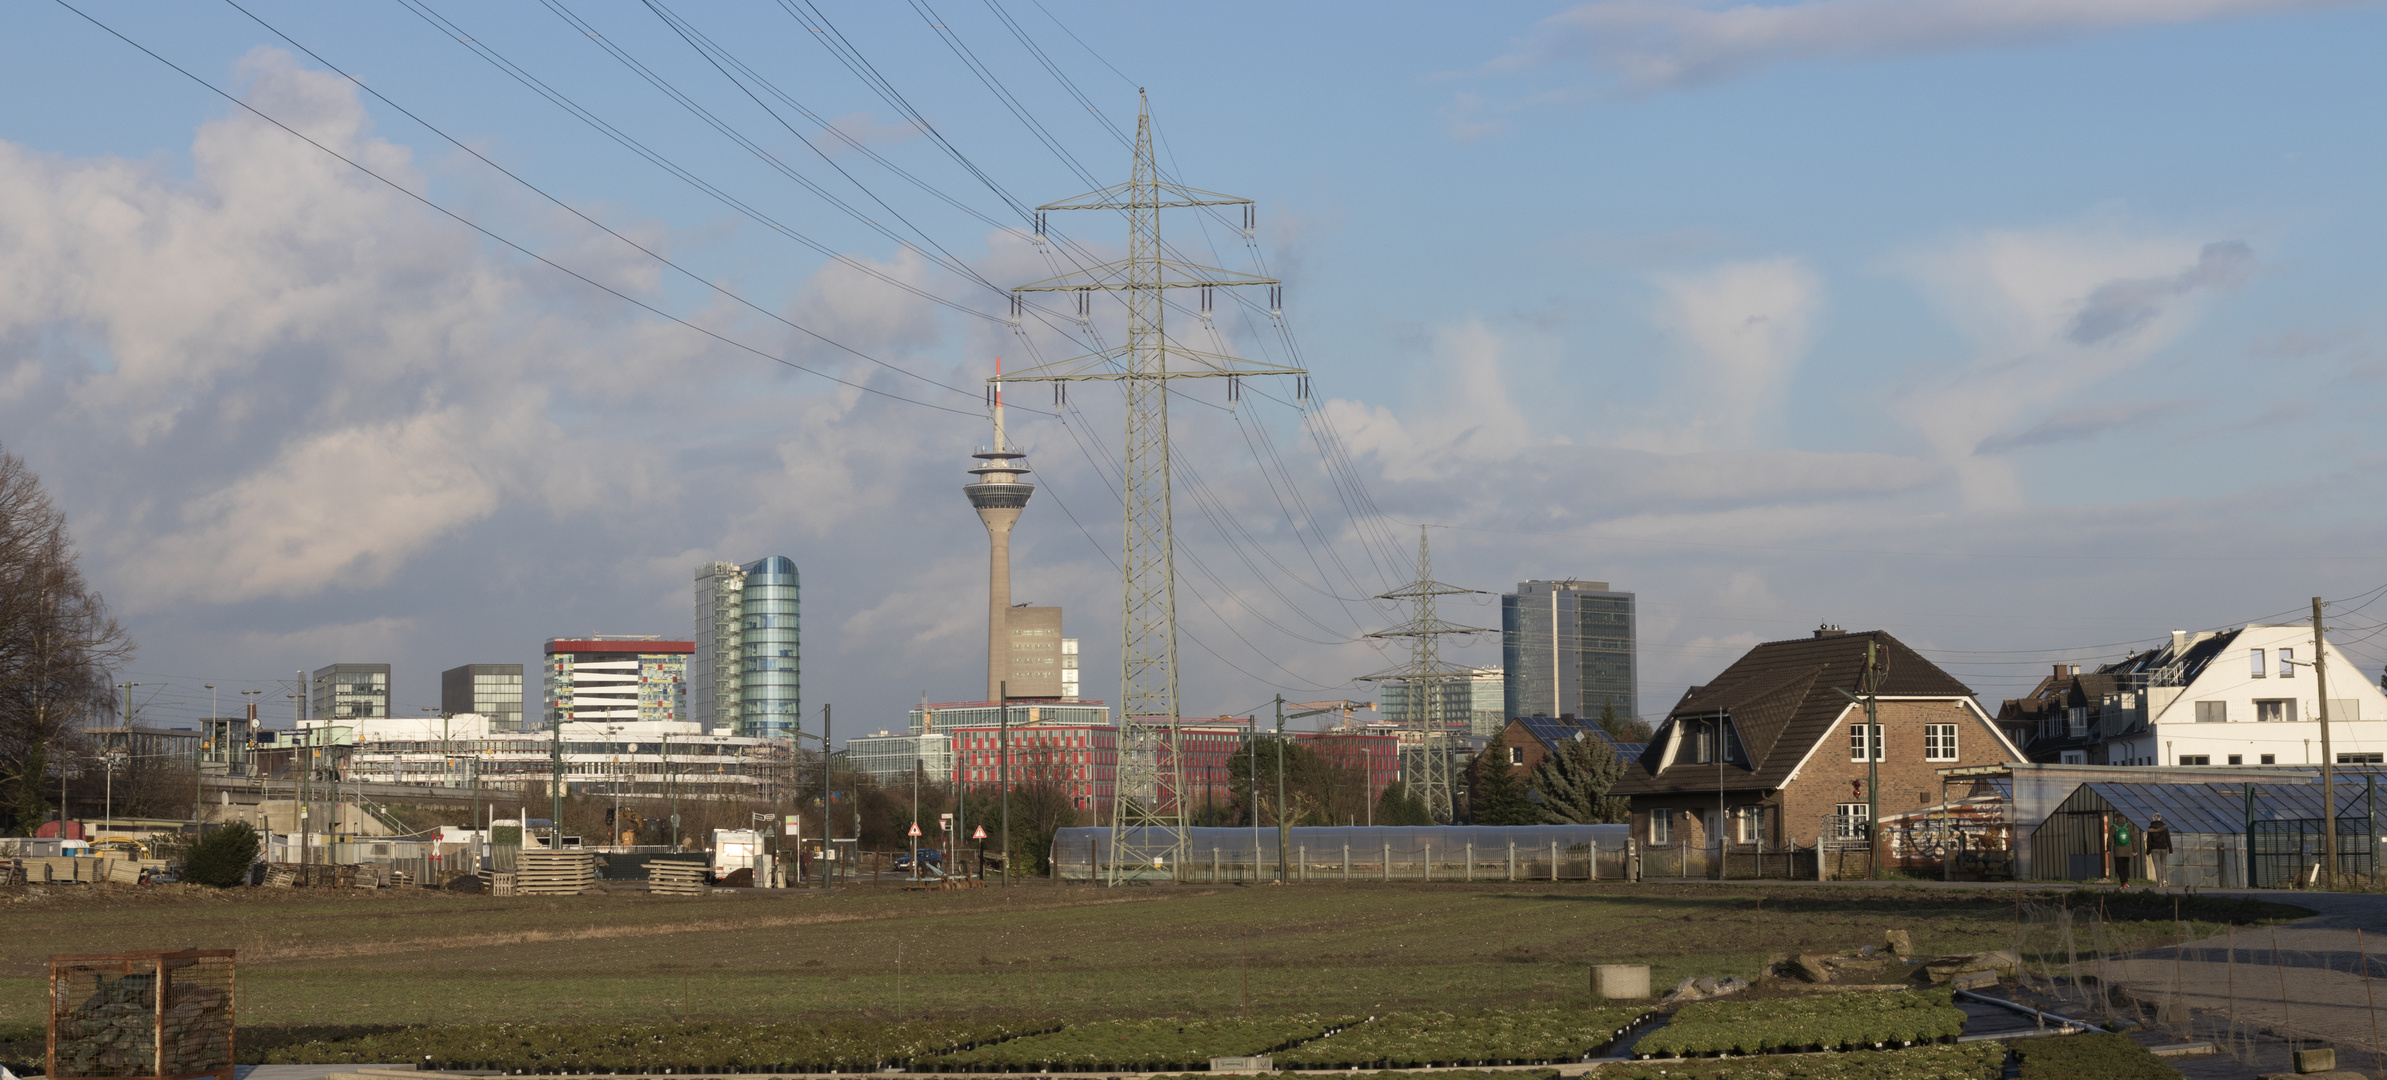 Medienhafen Düsseldorf: ein alternativer Blick